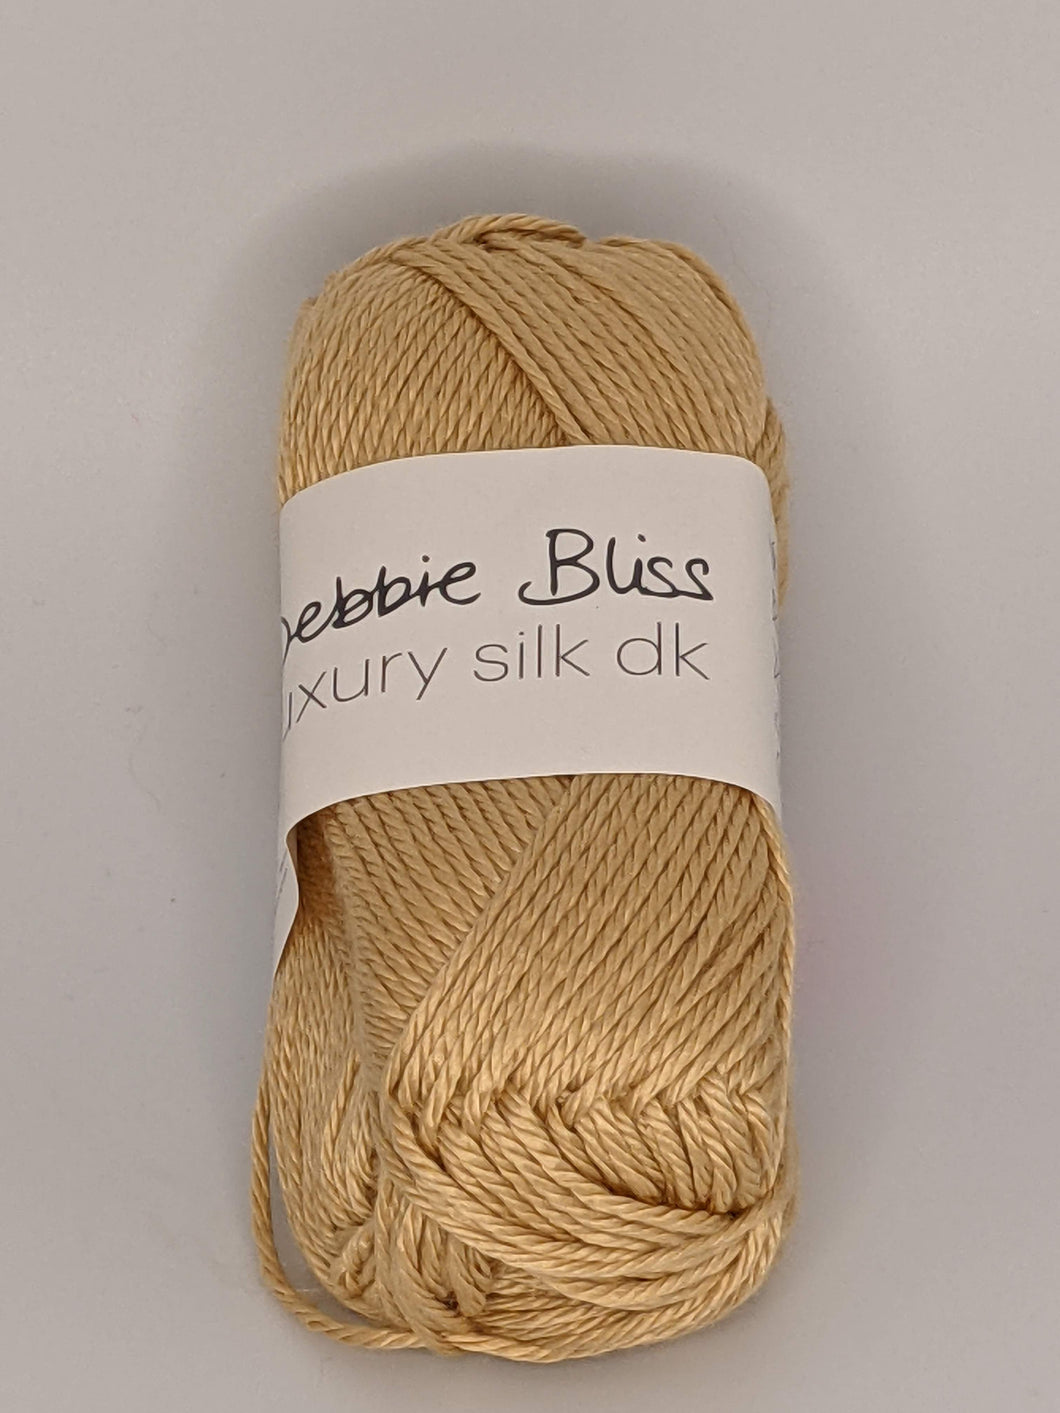 Debbie Bliss Luxury Silk DK